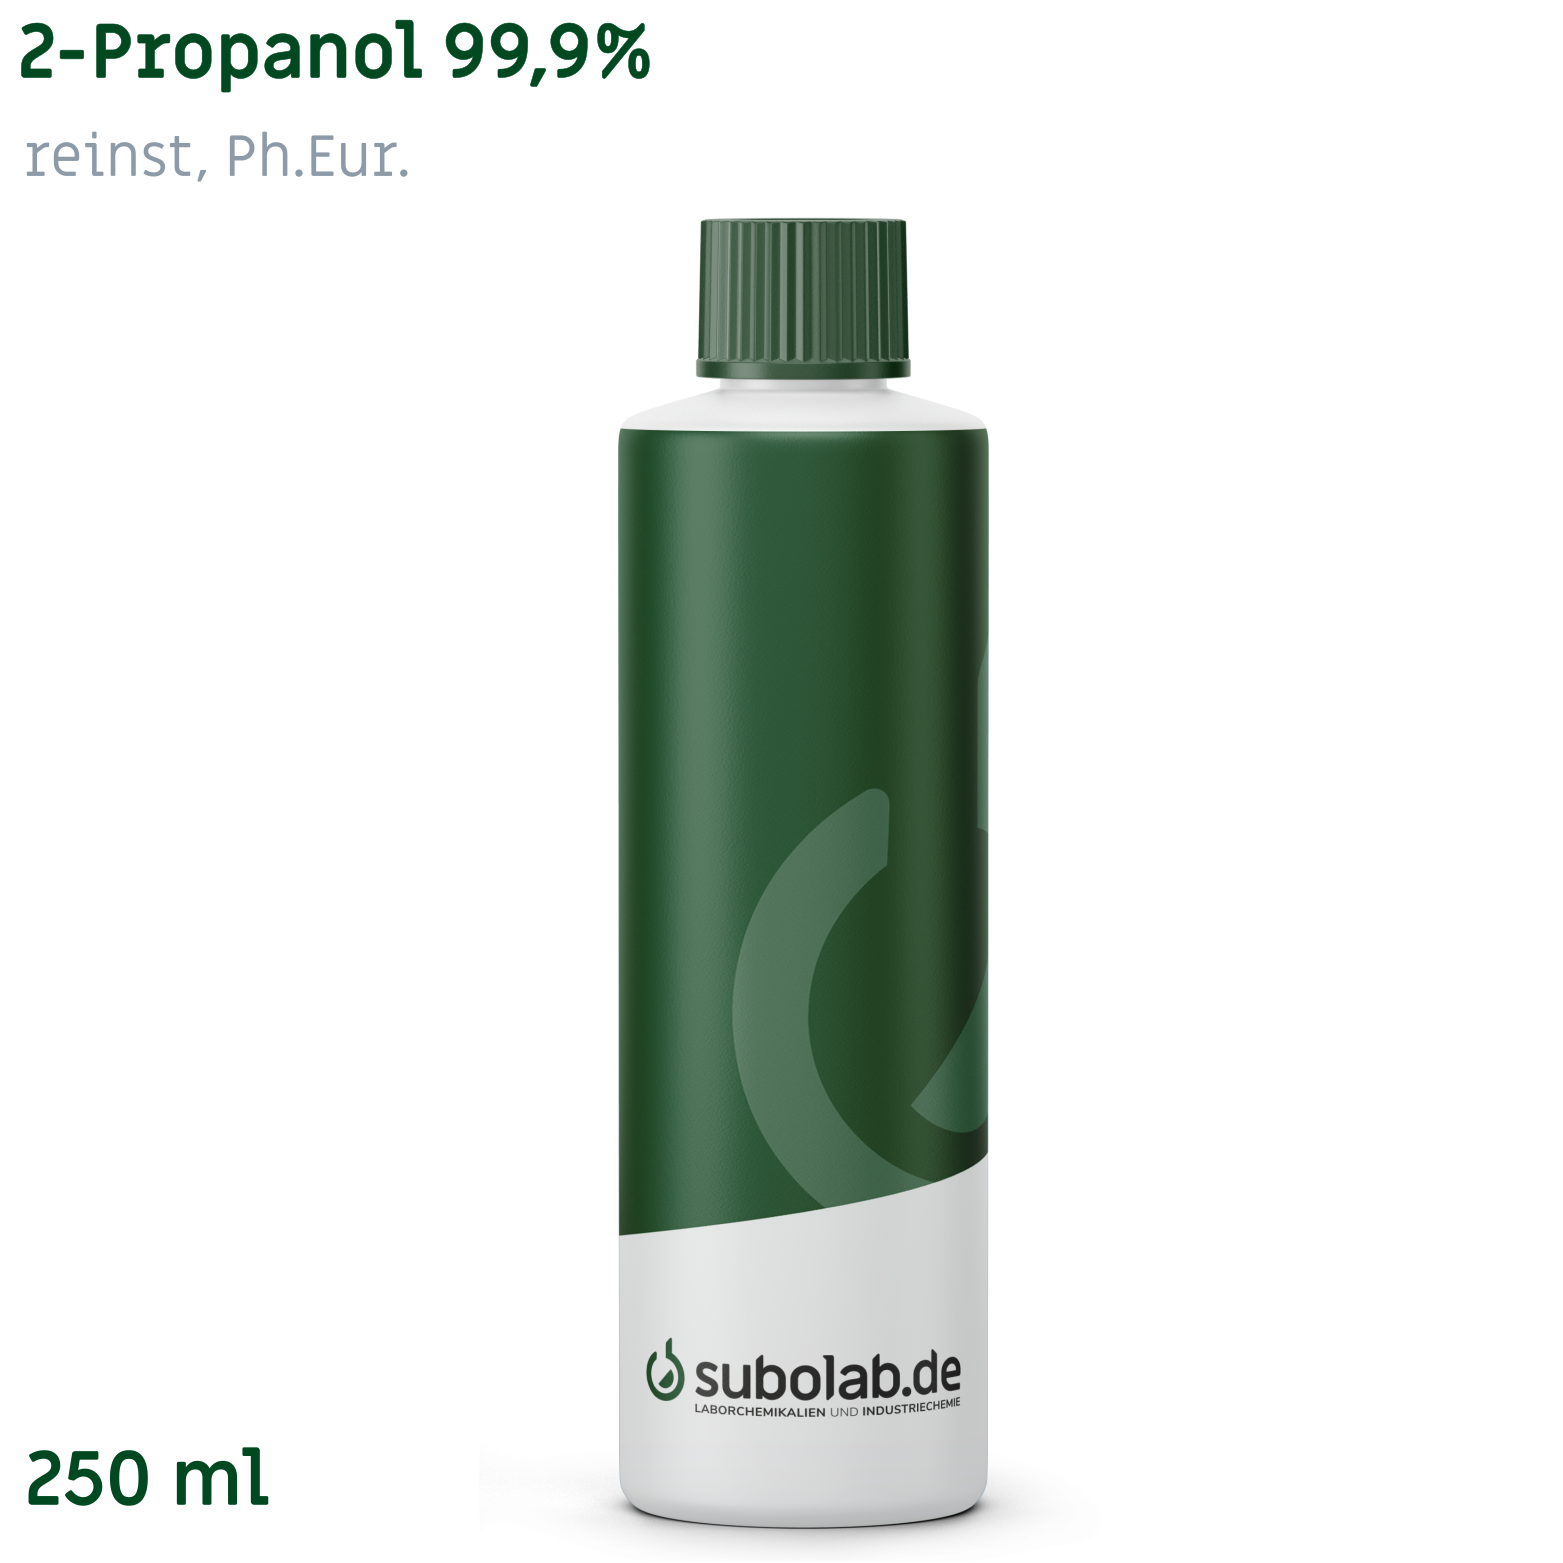 Bild von 2-Propanol 99,9% reinst, Ph.Eur. (250 ml)